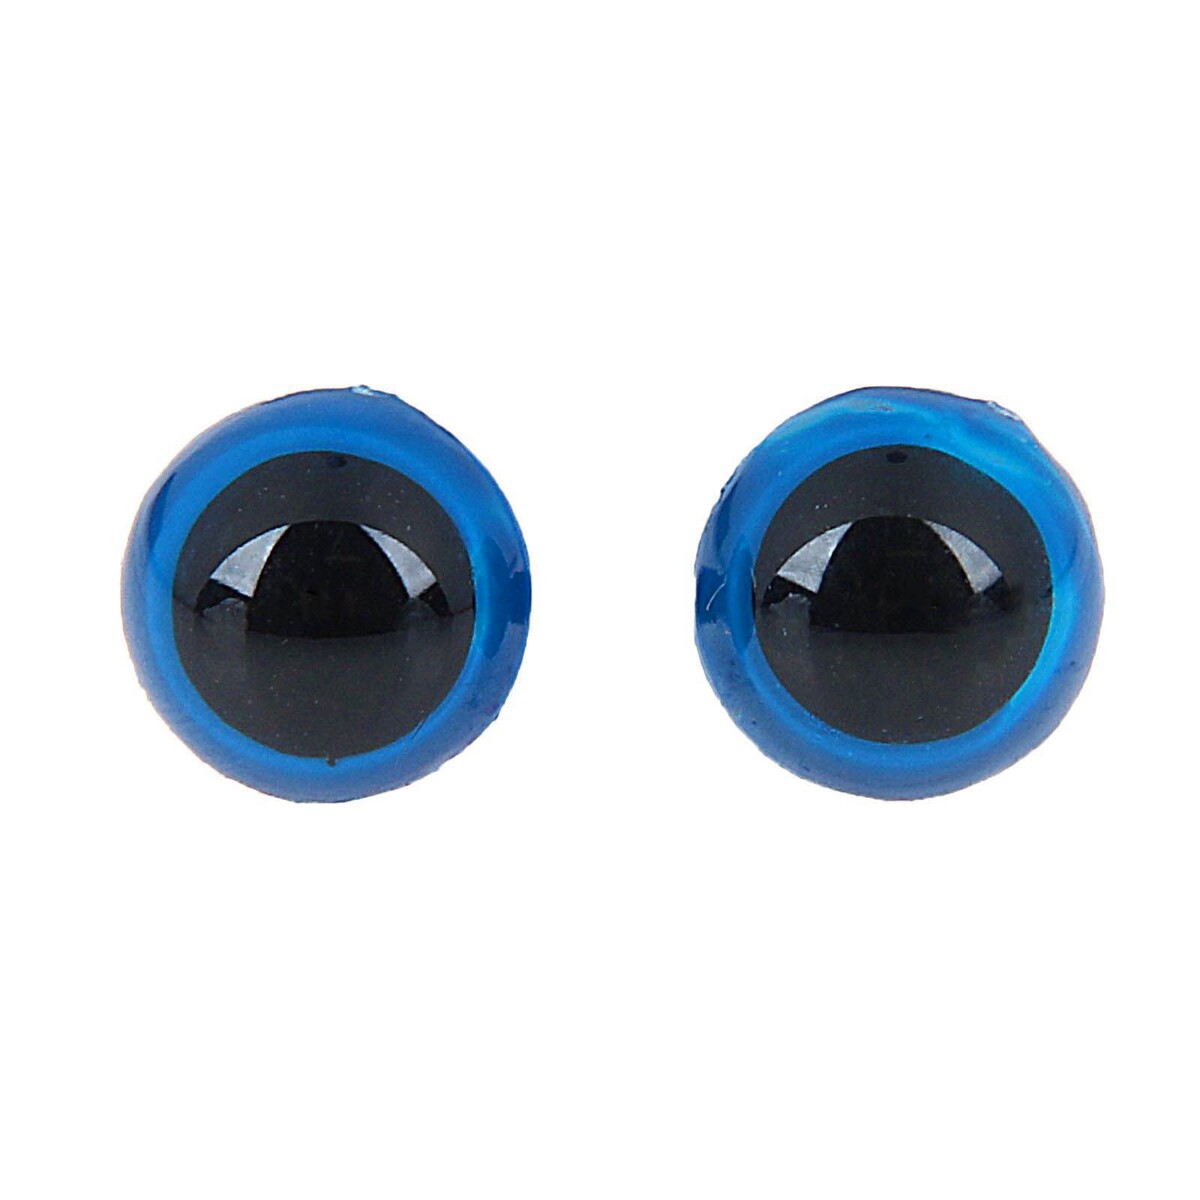 Глаза винтовые с заглушками, полупрозрачные, набор 4 шт, цвет голубой, размер 1 шт: 1,3×1,3 см